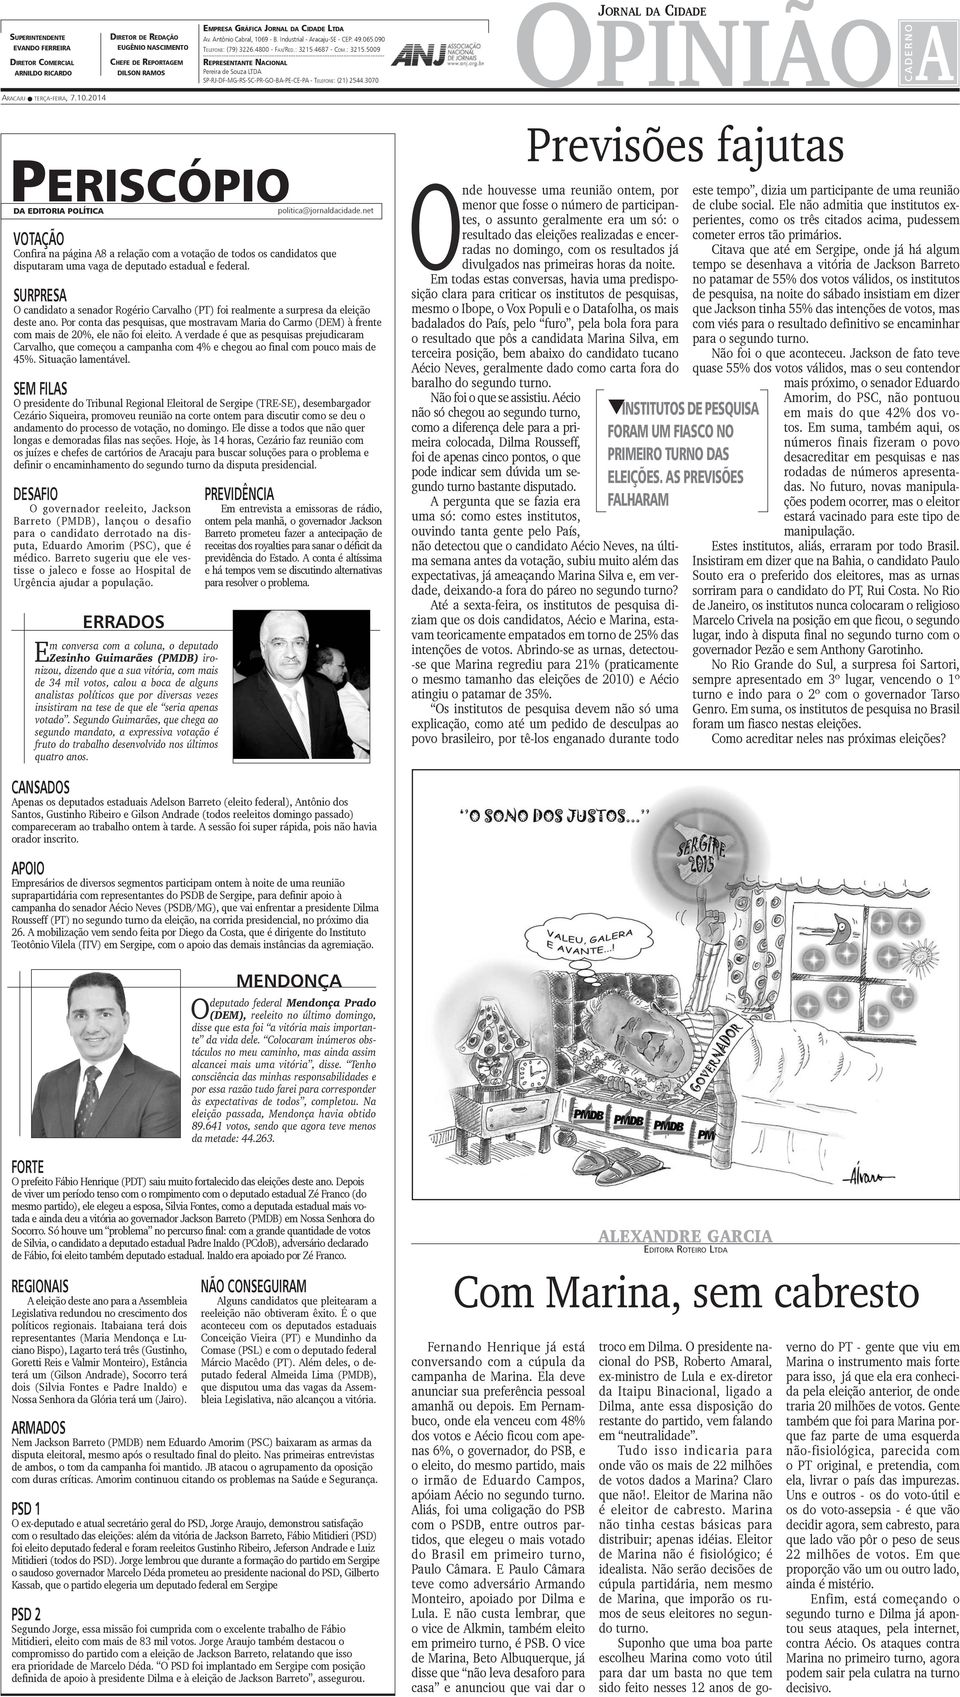 .. Representante Nacional Pereira de Souza LTDA SP-RJ-DF-MG-RS-SC-PR-GO-BA-PE-CE-PA - Telefone: (21) 2544.3070 opinião a C A D E R N O Aracaju terça-feira, 7.10.